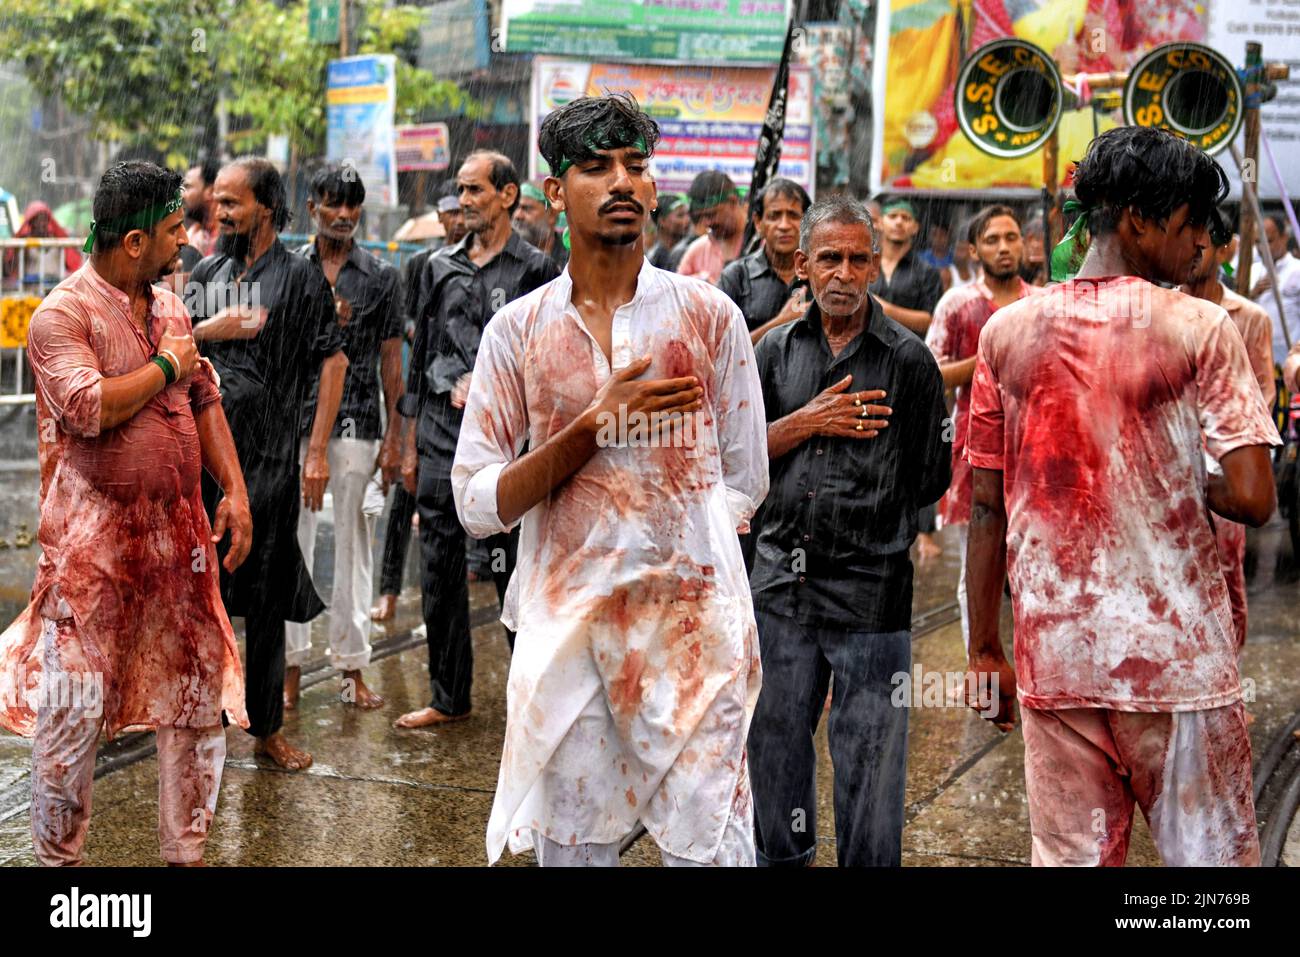 (NOTA DEL EDITOR: La imagen contiene contenido gráfico.) Los musulmanes chiítas cubiertos de sangre golpearon sus pechos y cabezas con hojas durante la procesión de Muharram en Kolkata. Muharram es el primer mes del calendario islámico y Ashura es el décimo día del mes de Muharram en el que se celebra la conmemoración del martirio del imán Hussain, nieto del profeta Mahoma (PBUH), durante la batalla de Karbala. Es parte del duelo por los musulmanes chiítas y un día de ayuno para los musulmanes sunitas que se observa en todo el mundo. Foto de stock